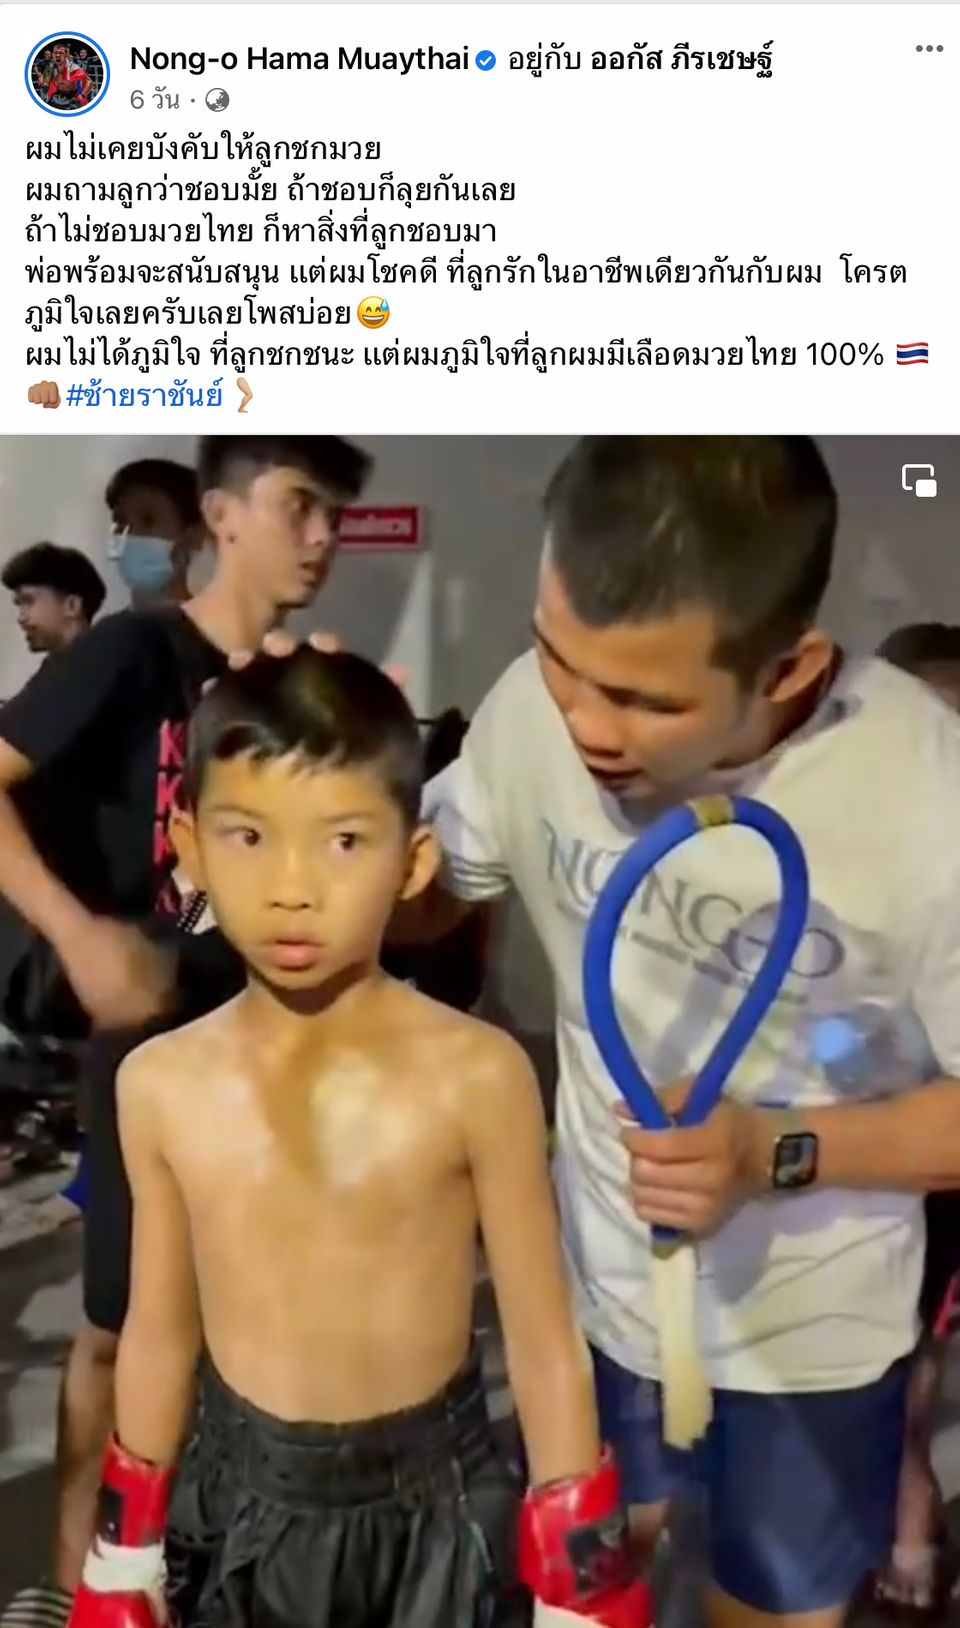 ONE Championship : น้องโอ๋ ฮาม่ามวยไทย สุดปลื้ม น้องออกัส ตามรอยเท้าพ่อในเส้นทางมวยไทย